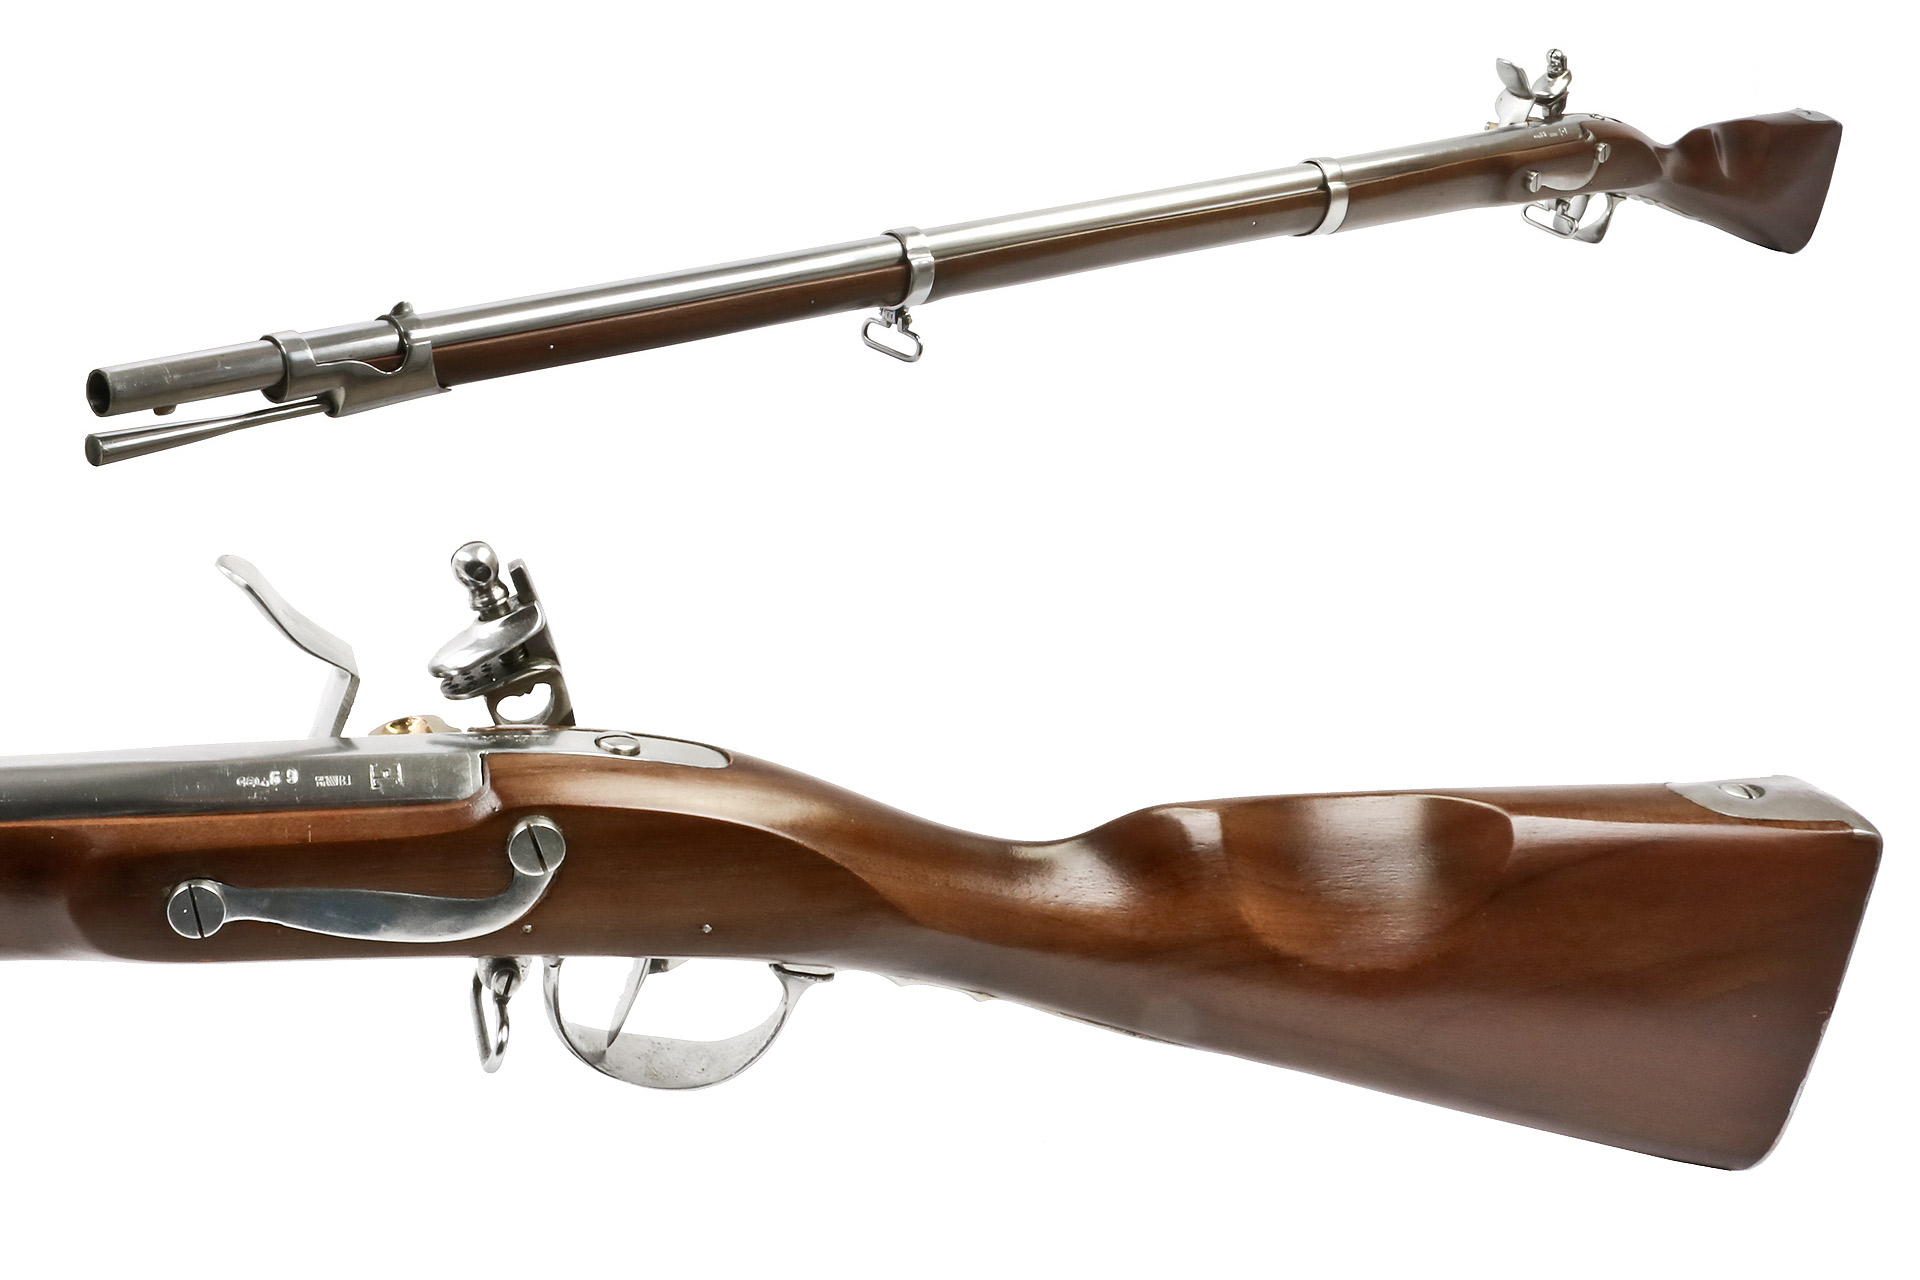 Vorderlader Steinschlossgewehr 1777 Revolutionnaire French Infantry Musket, Kaliber .69 bzw. 17,5 mm (P18)